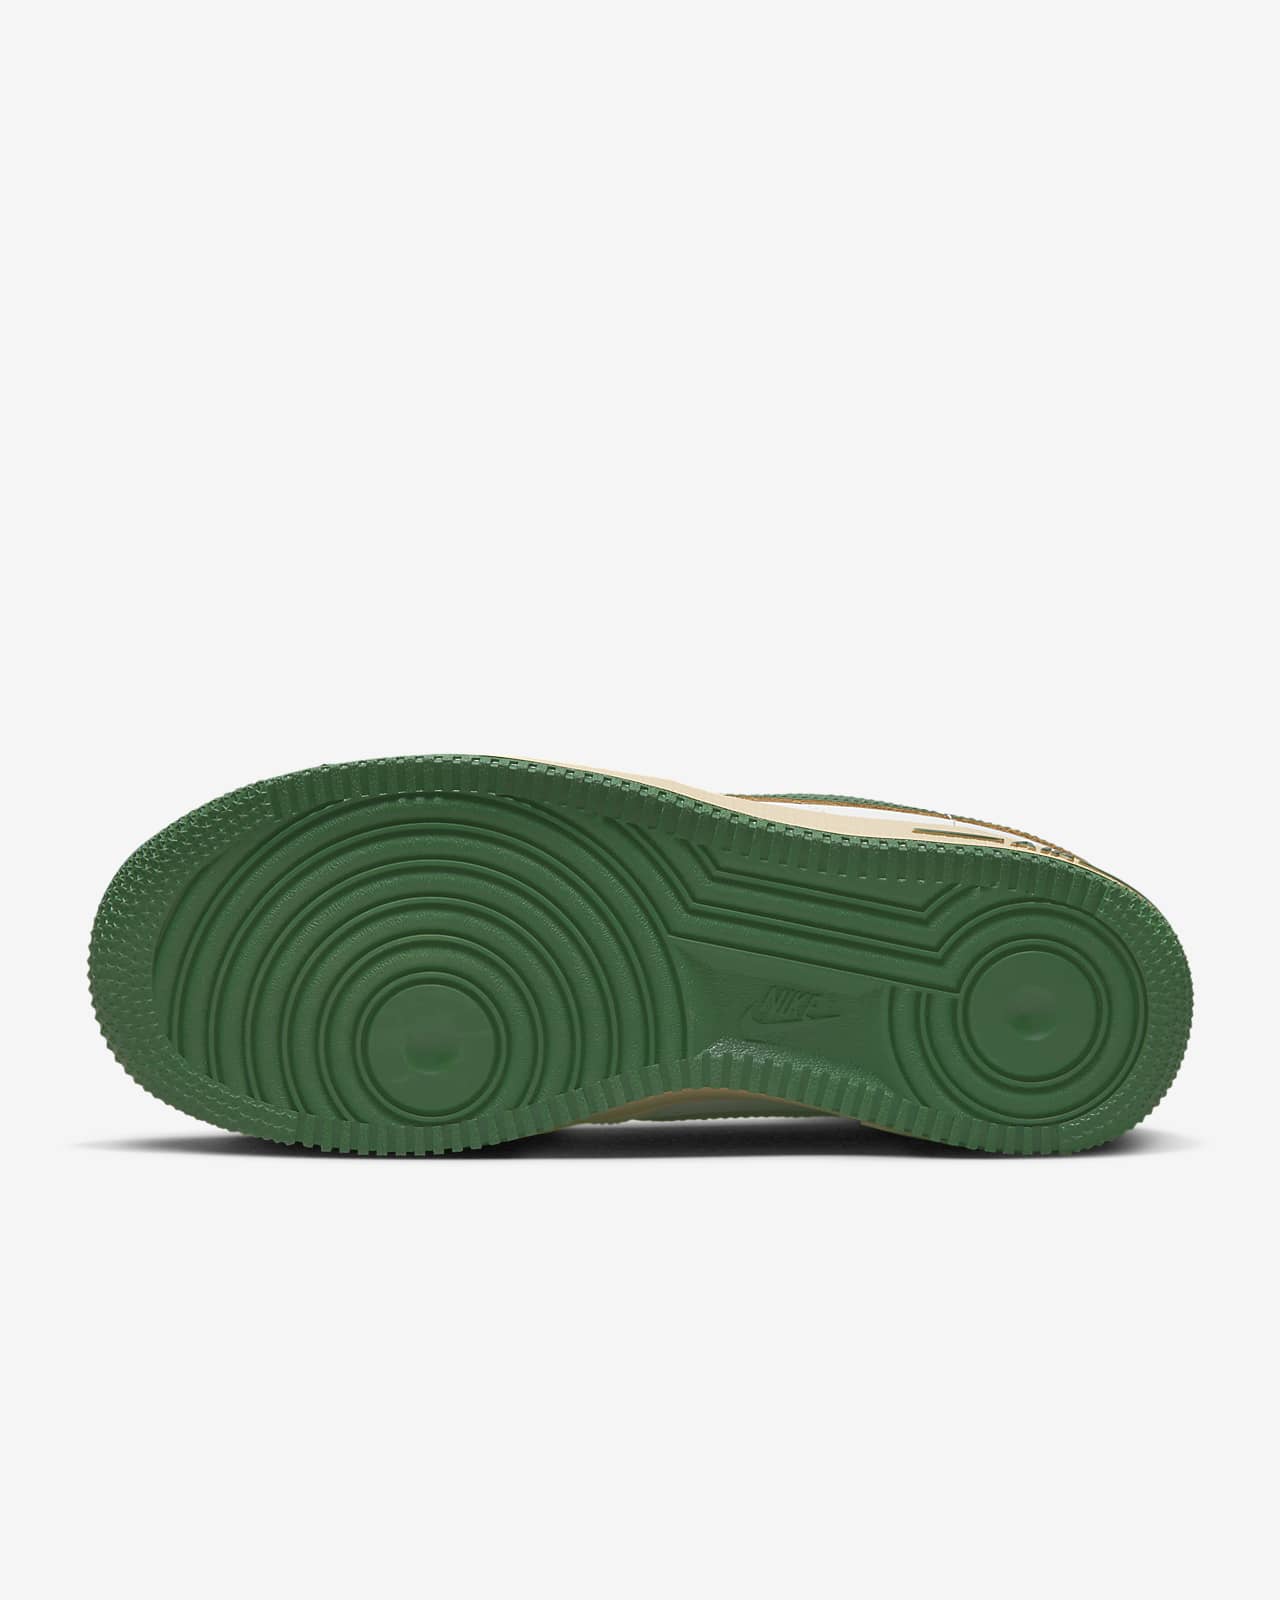 Green Air Force 1 Shoes. Nike ZA